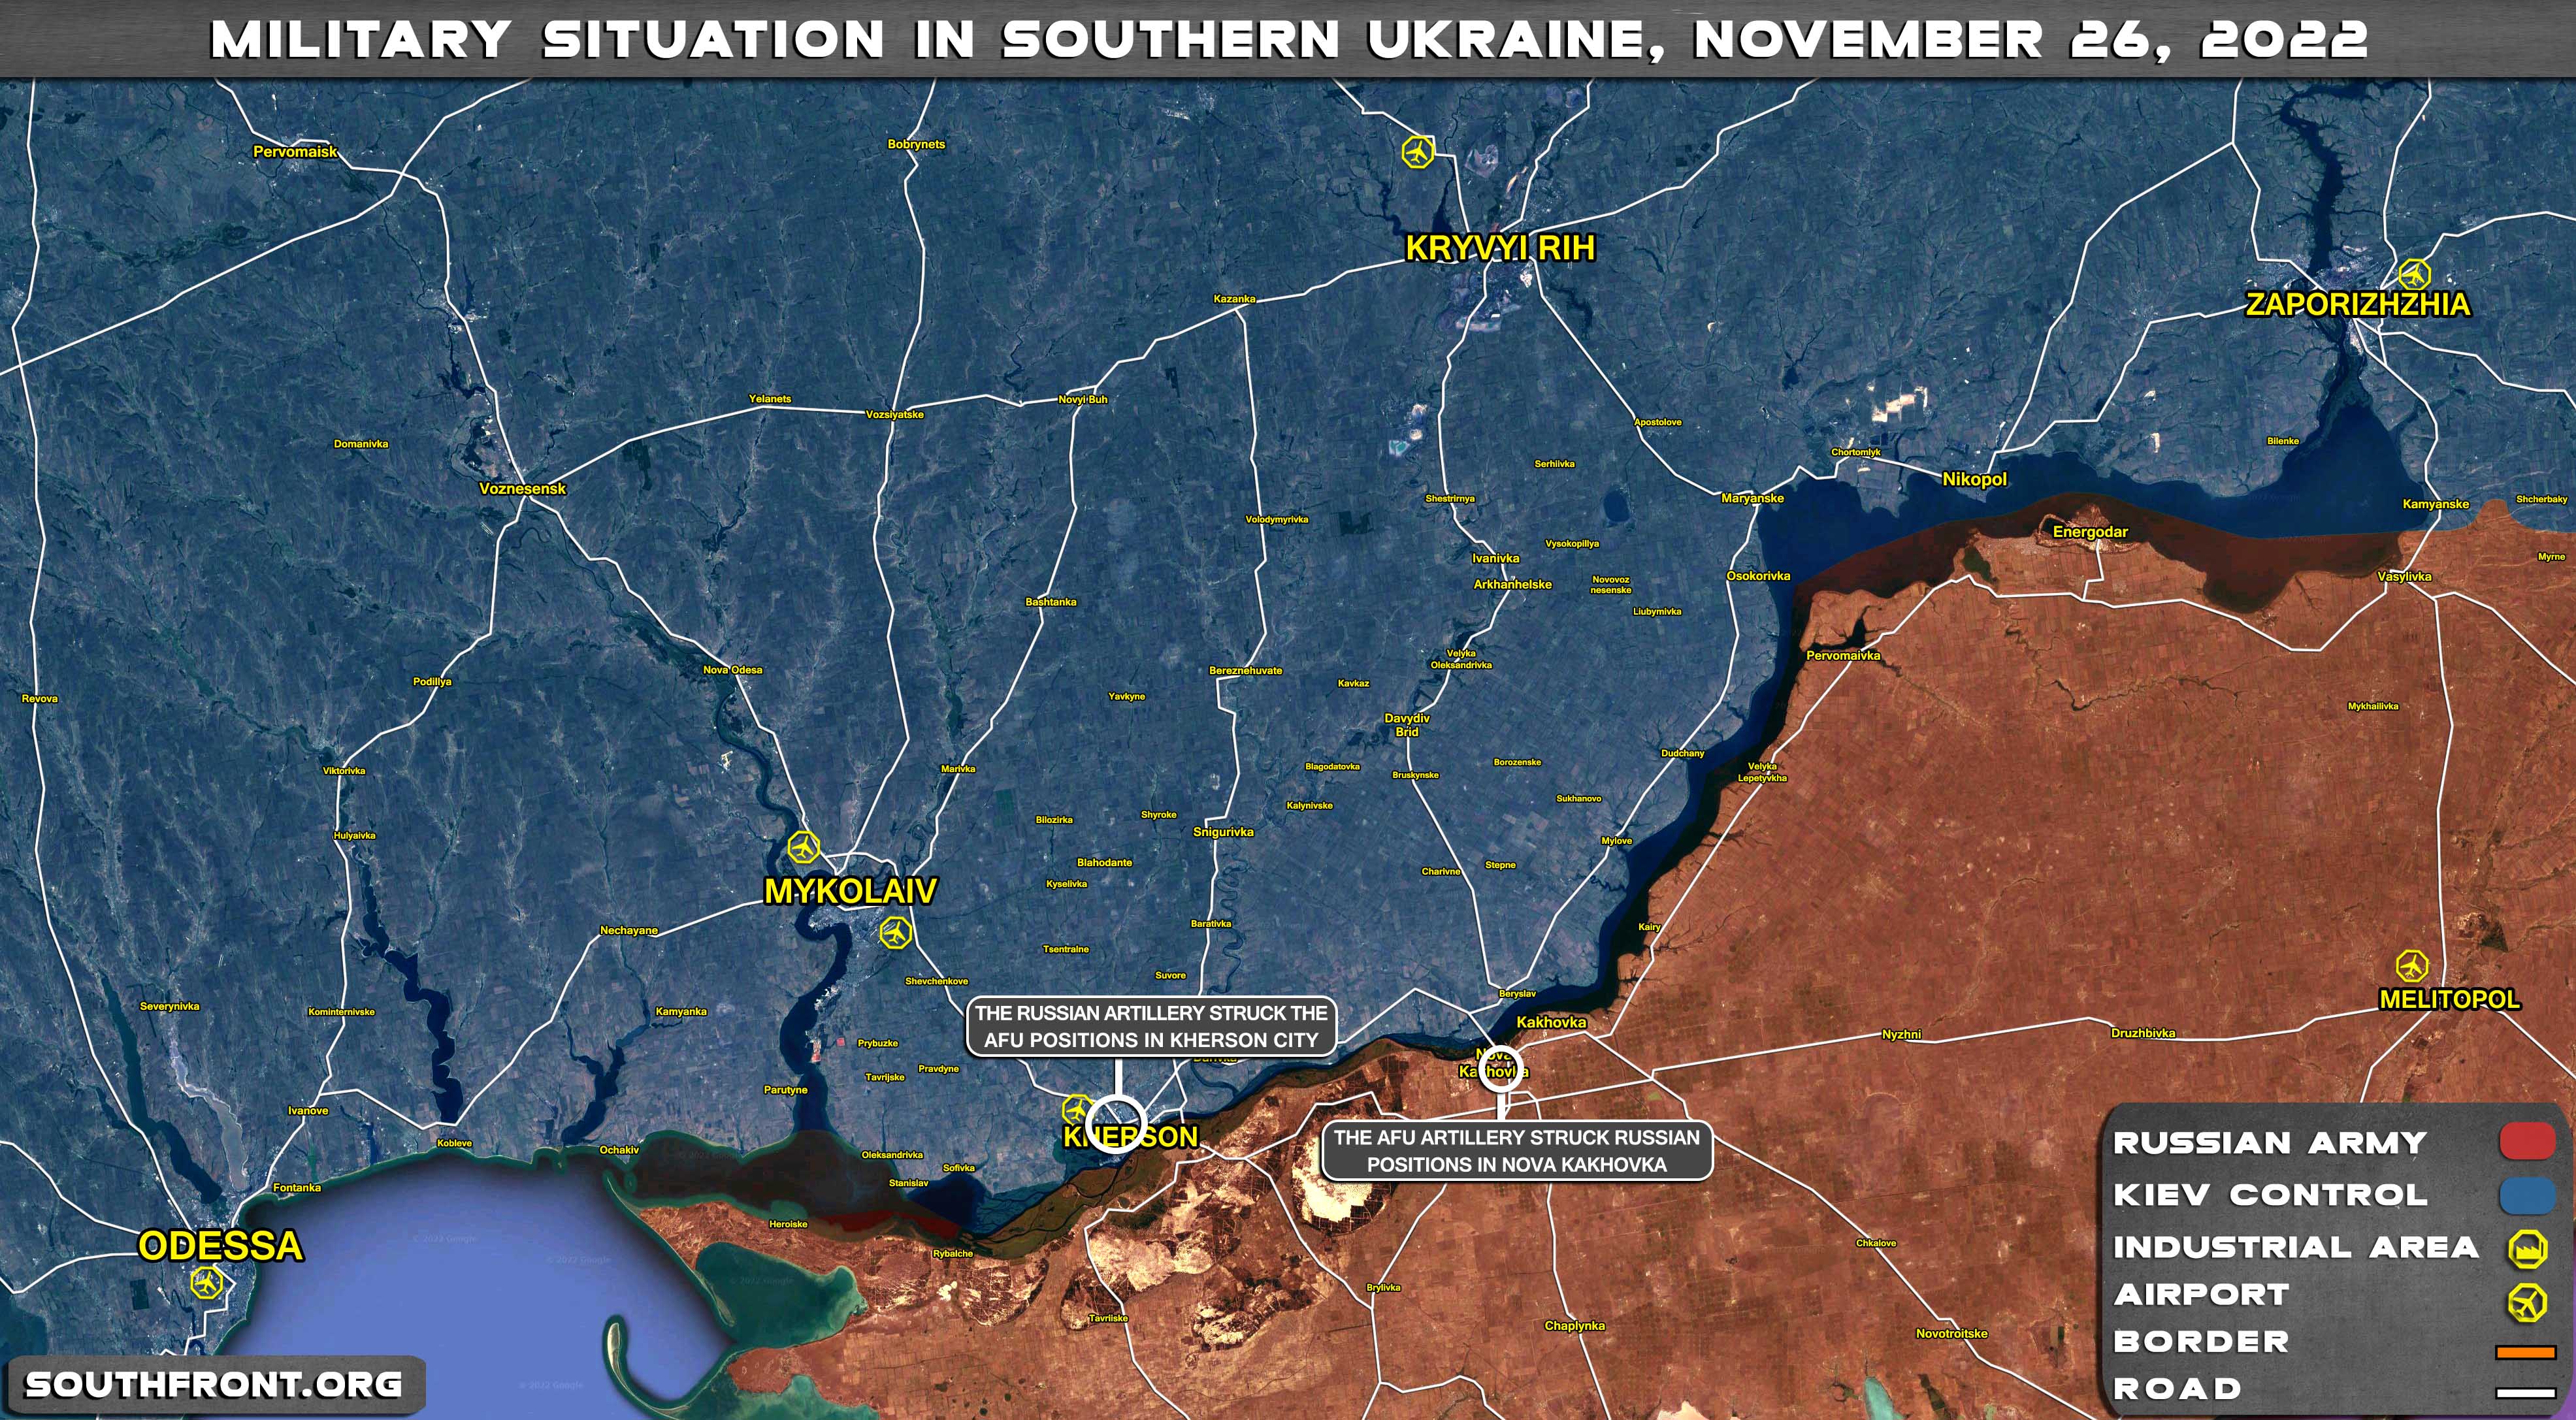 26november2022_Ukraine_Odessa_KryvyiRih_Map.jpg